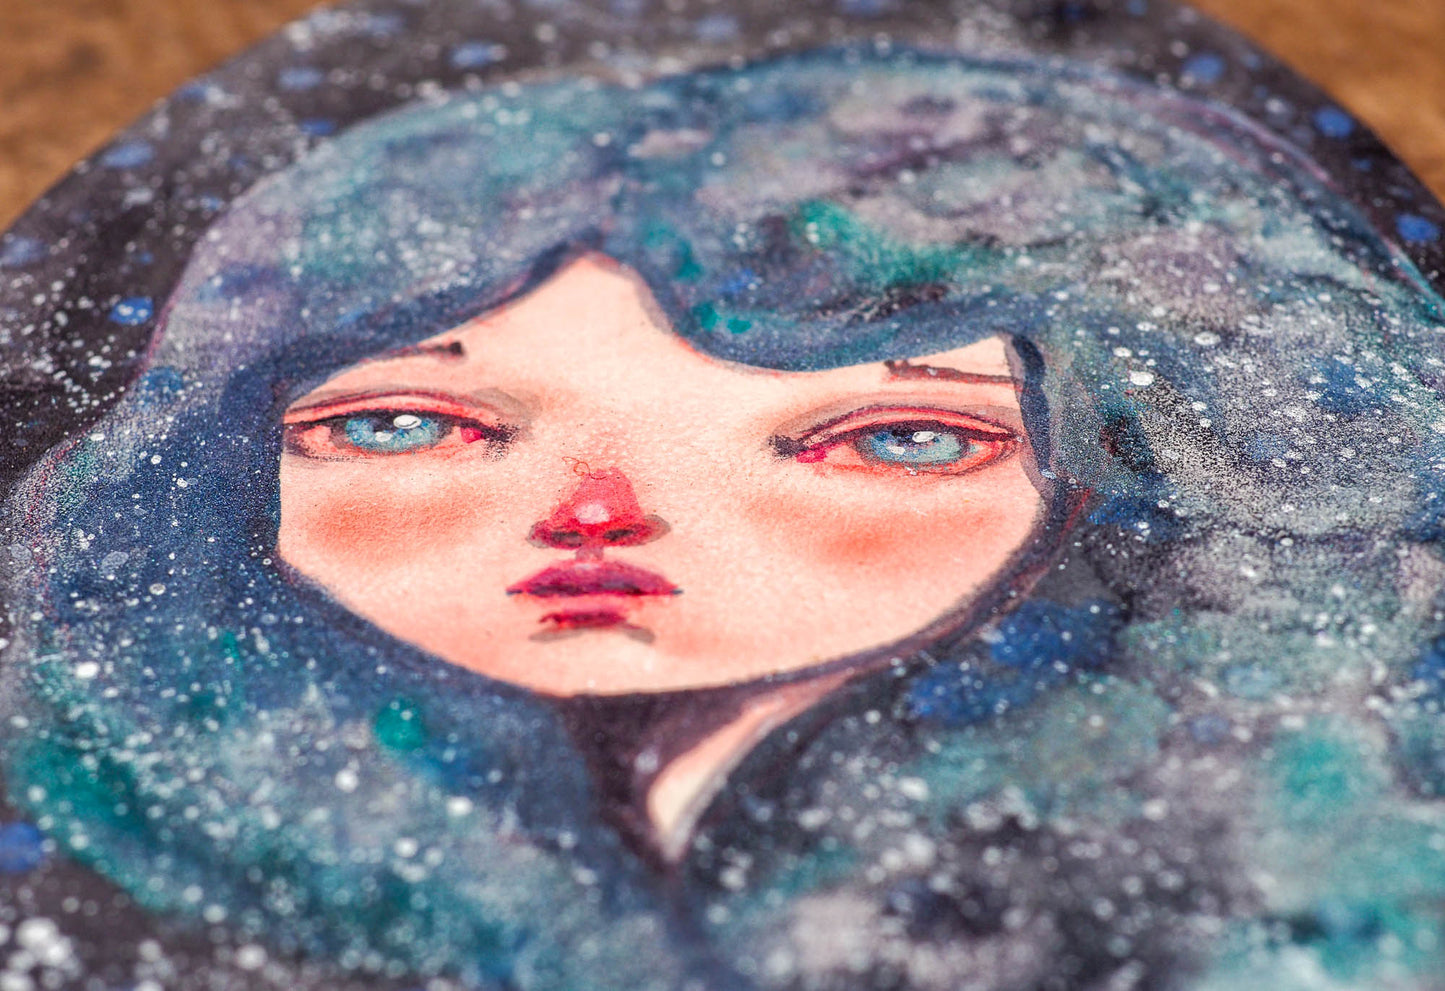 ANDROMEDA - One of Danita's deep space inspired watercolor portraits, Original Art by Danita Art